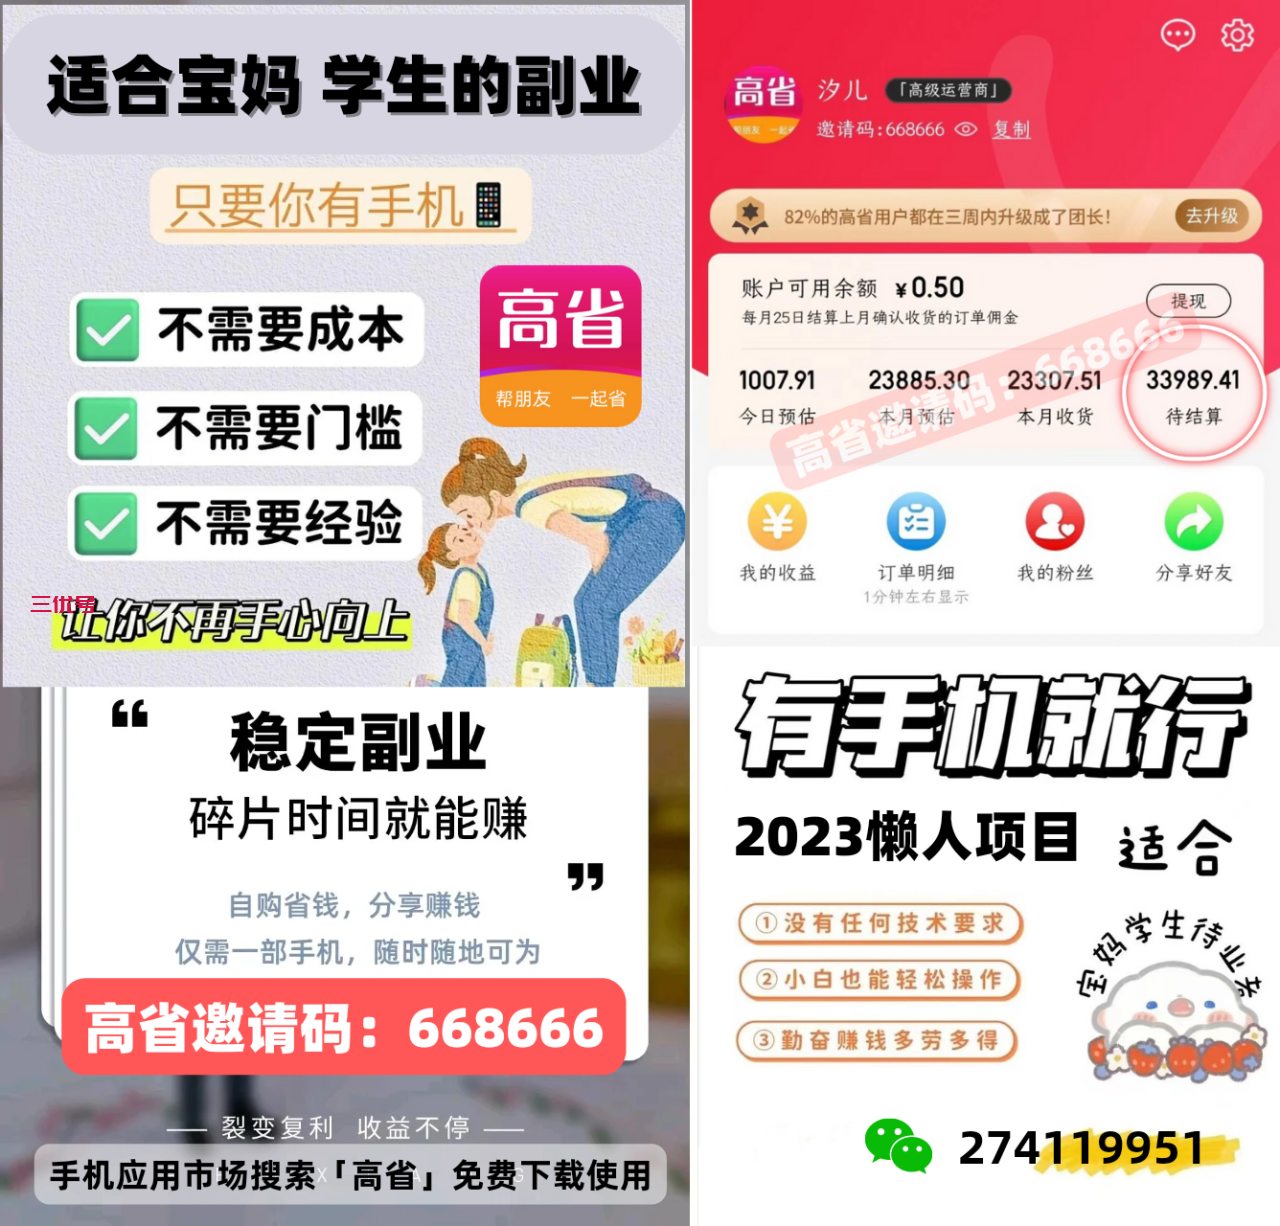 高省邀请码668666 高省app官方邀请码 精华干货 第2张